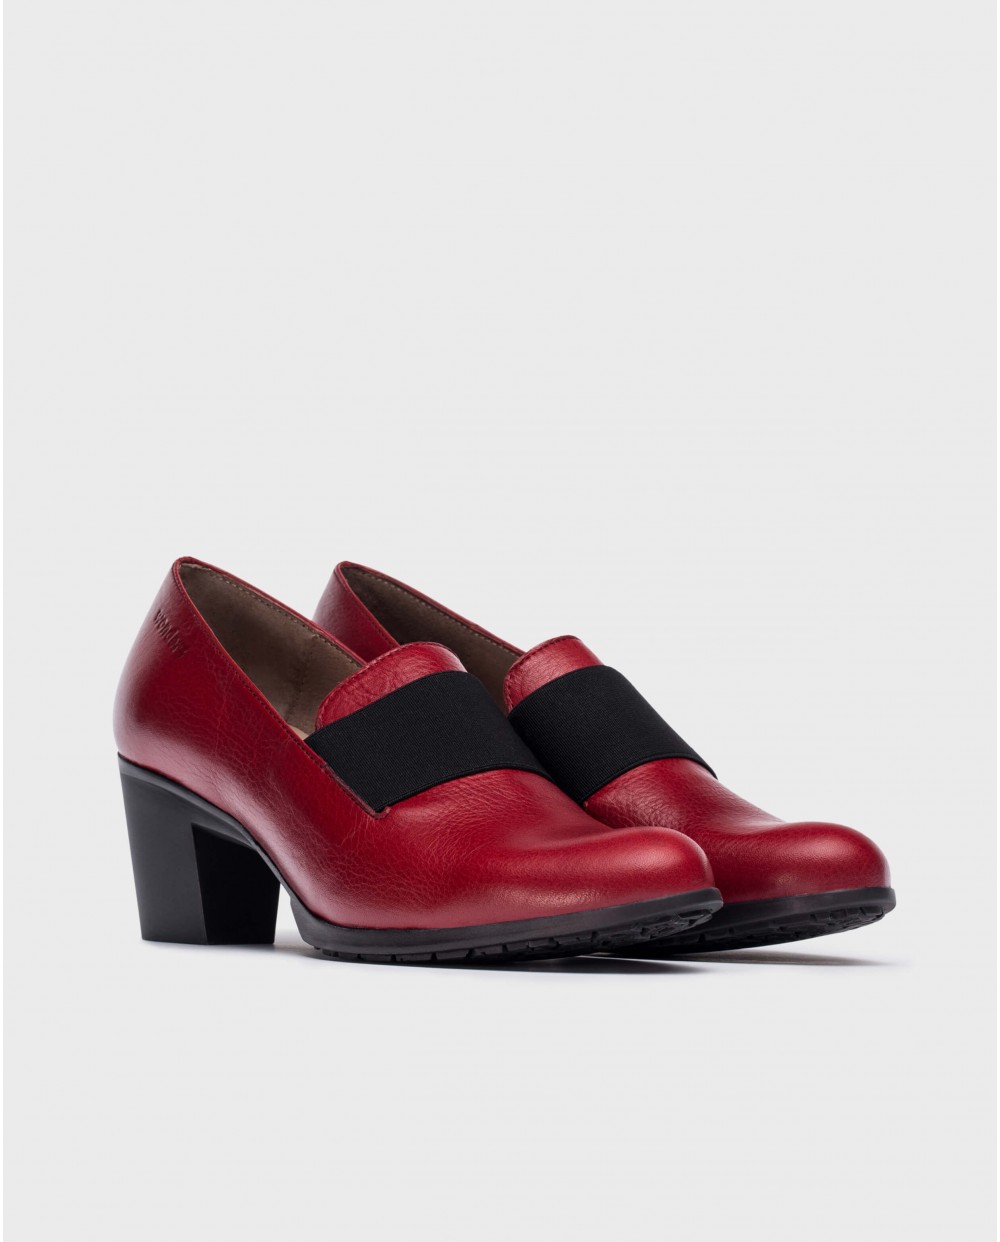 Wonders-Heels-Red elastic shoes